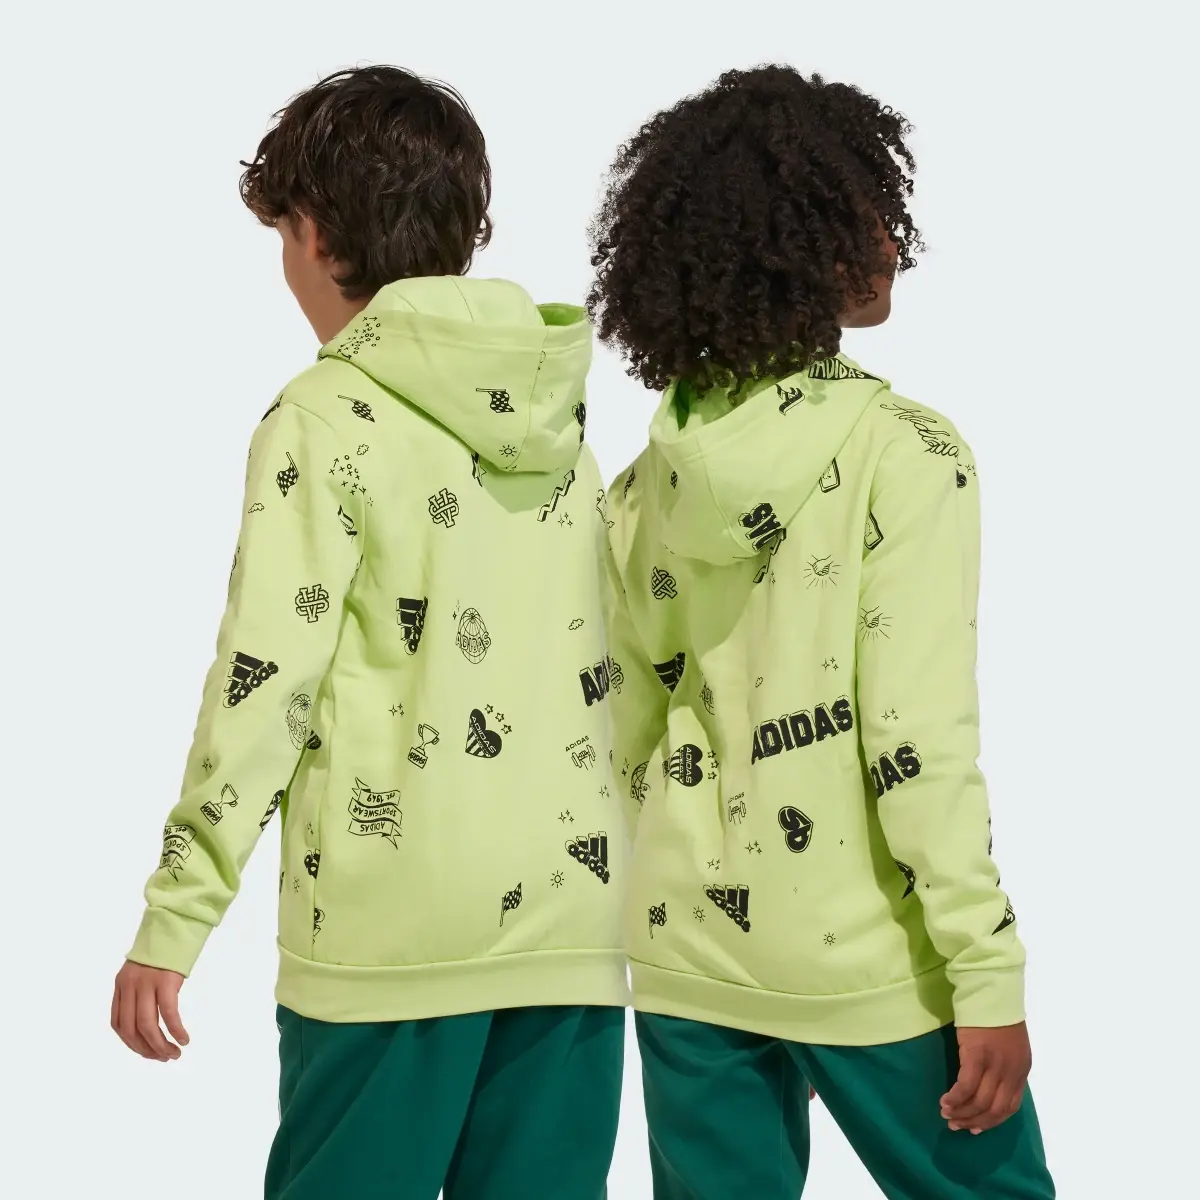 Adidas Brand Love Allover Print Full-Zip Hoodie Kids. 2